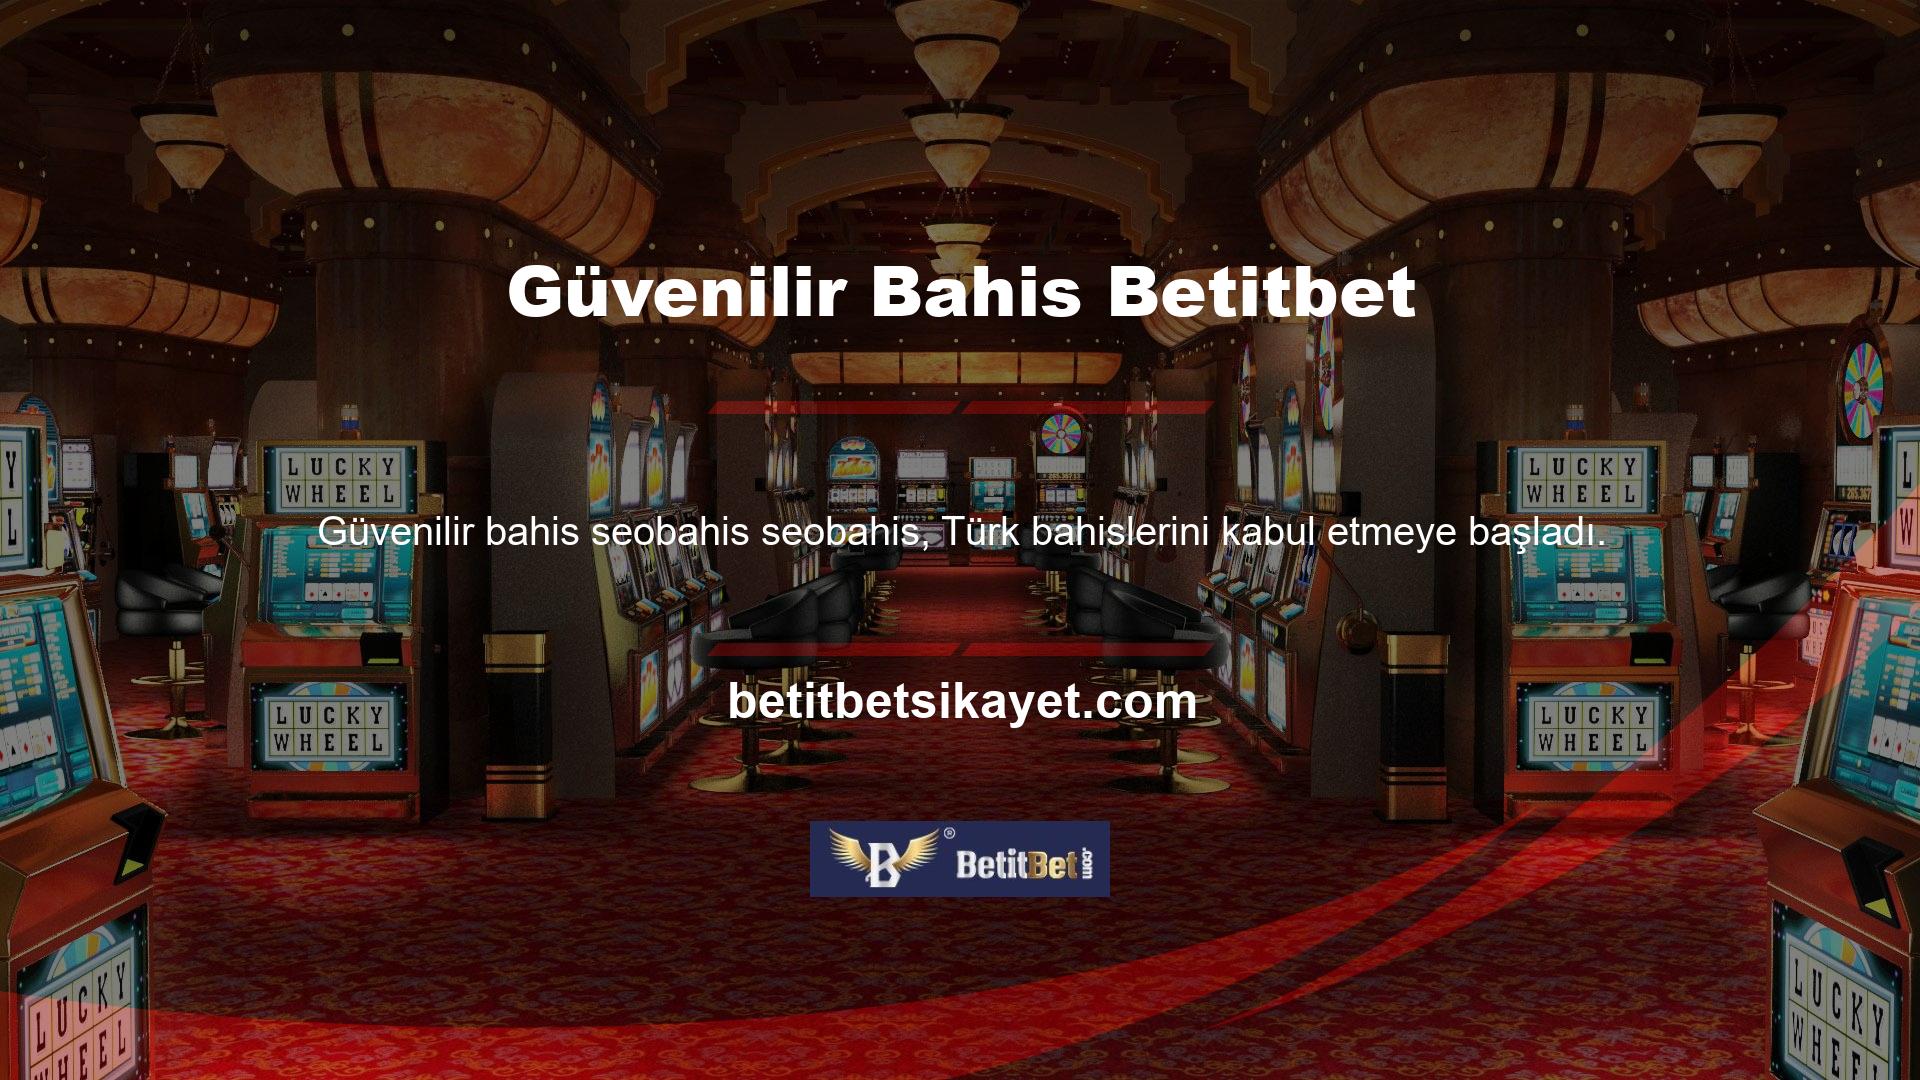 Yüksek kazanma oranı ve hızlı ödeme yöntemleri ile ünlü olan Betitbet, Türkiye'nin en popüler yasa dışı casino sitelerinden biridir